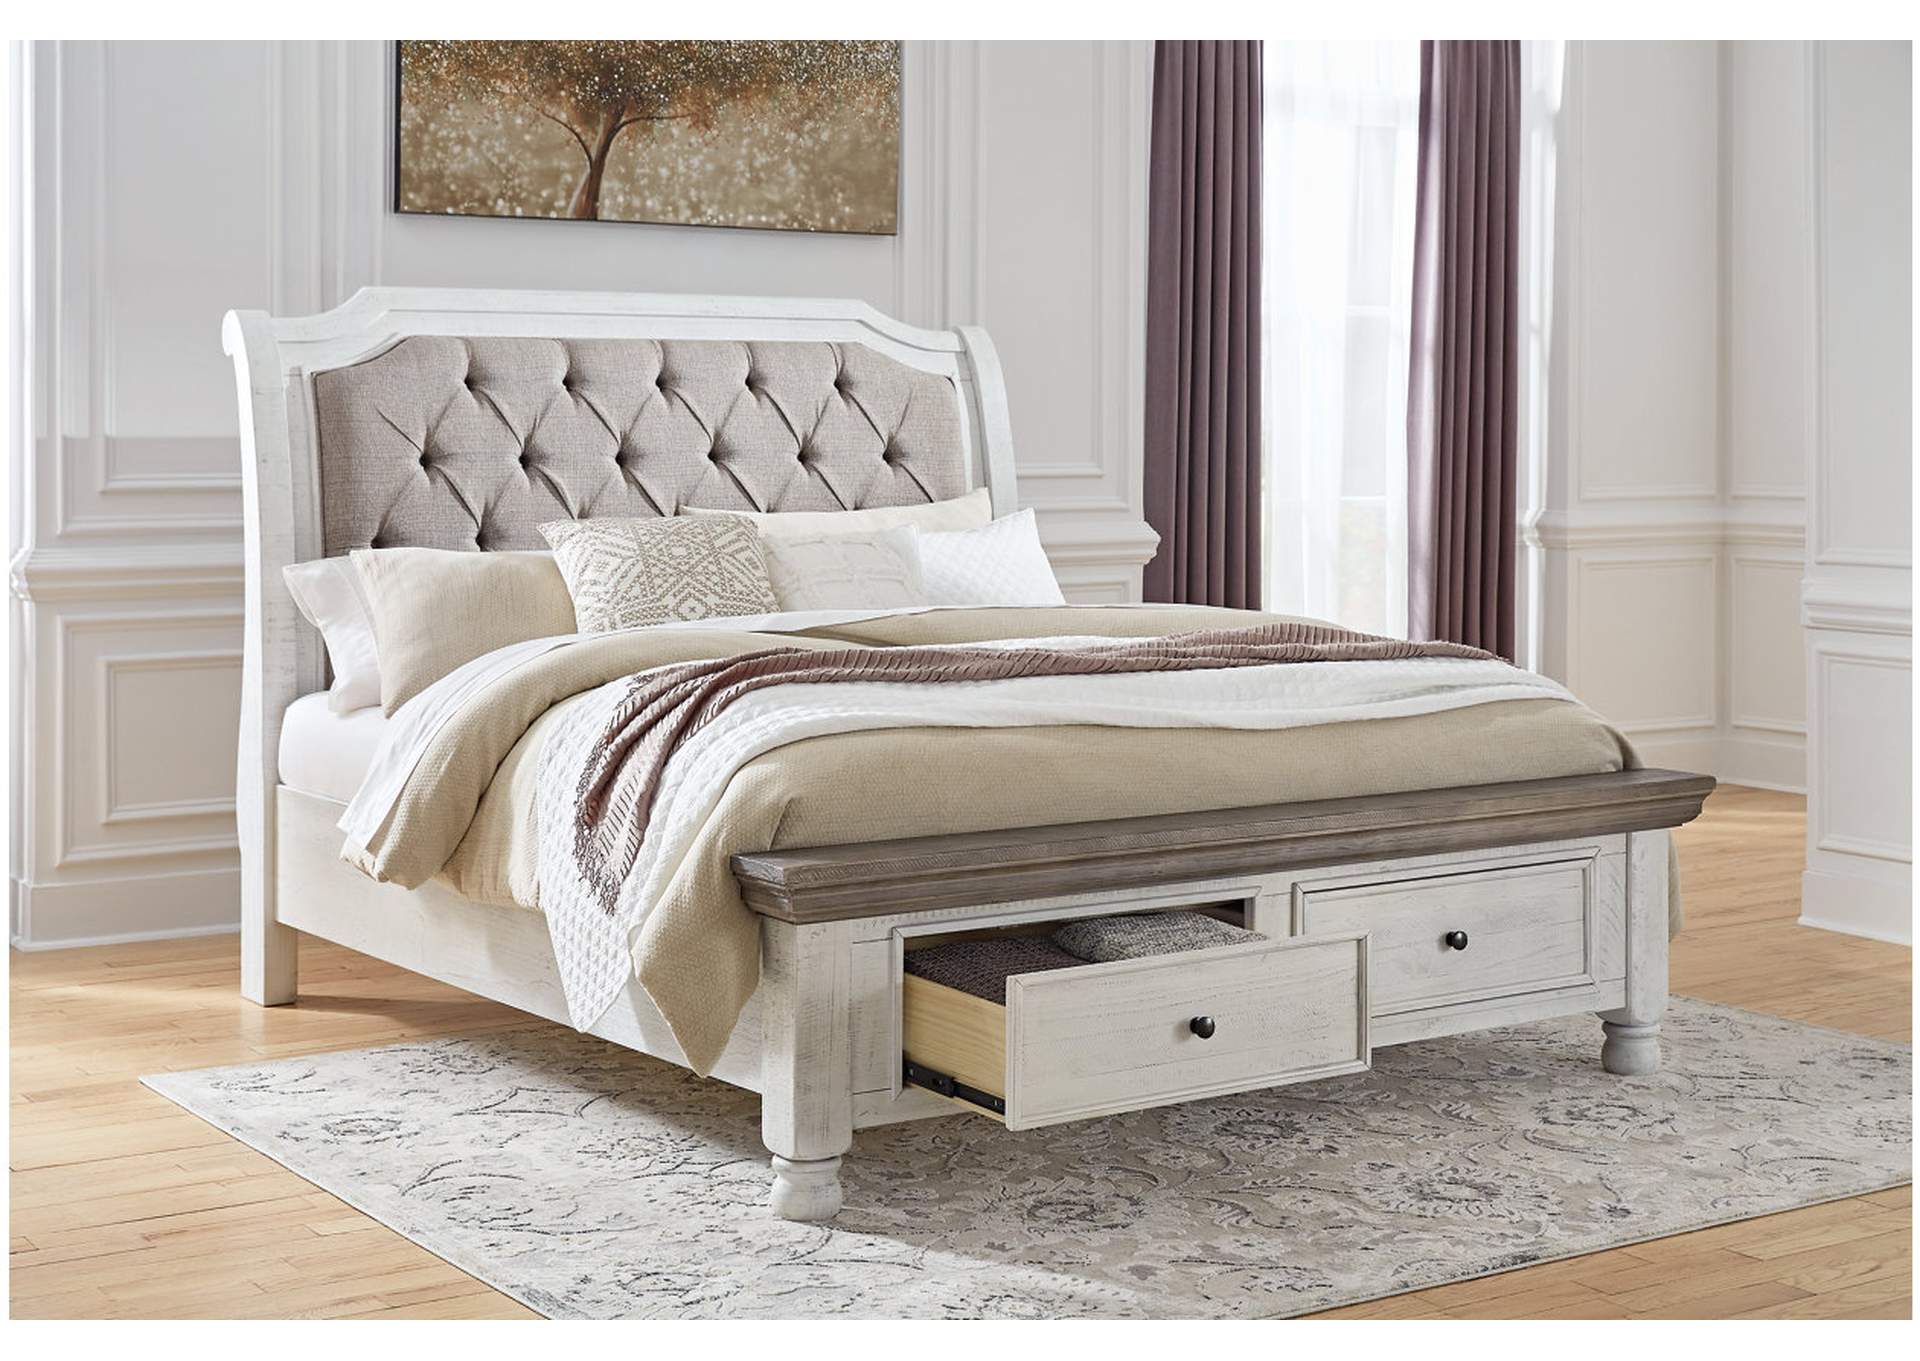 Havalance Queen Sleigh Bed with Storage with Mirrored Dresser,Millennium